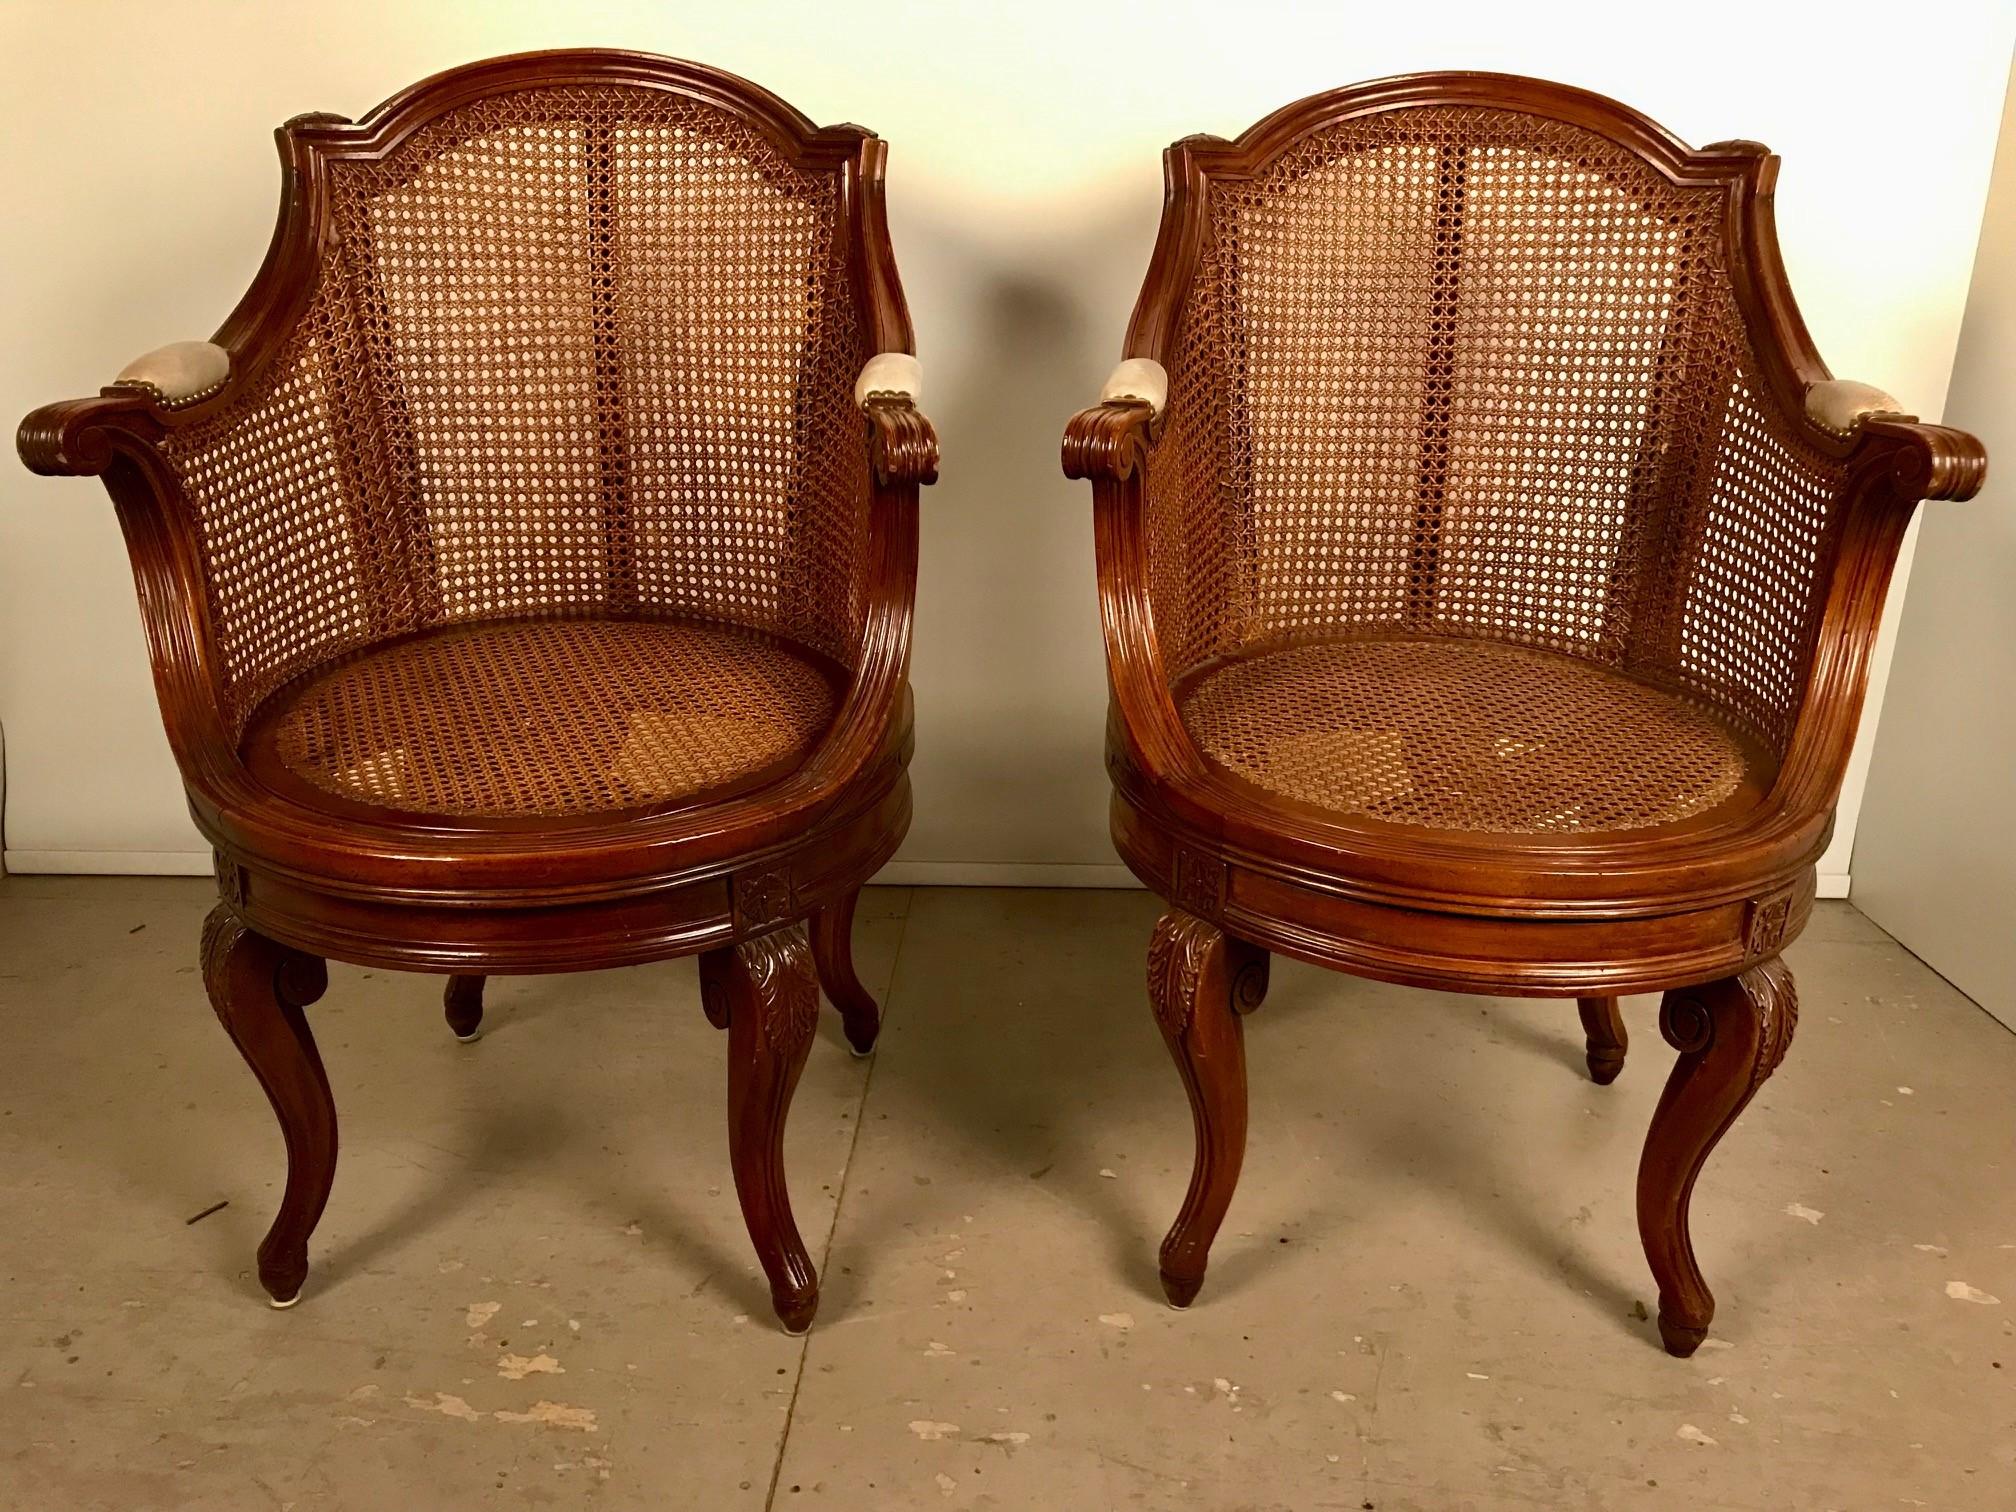 Ein Paar französischer Drehsessel aus Nussbaum im Louis XV-Stil, die Sitze und Rückenlehnen sind in ausgezeichnetem Zustand. Diese sind eine wunderbare und recht komfortabel Paar, mit einer gebogenen Rückenlehne zurück paterae und Leder gepolstert